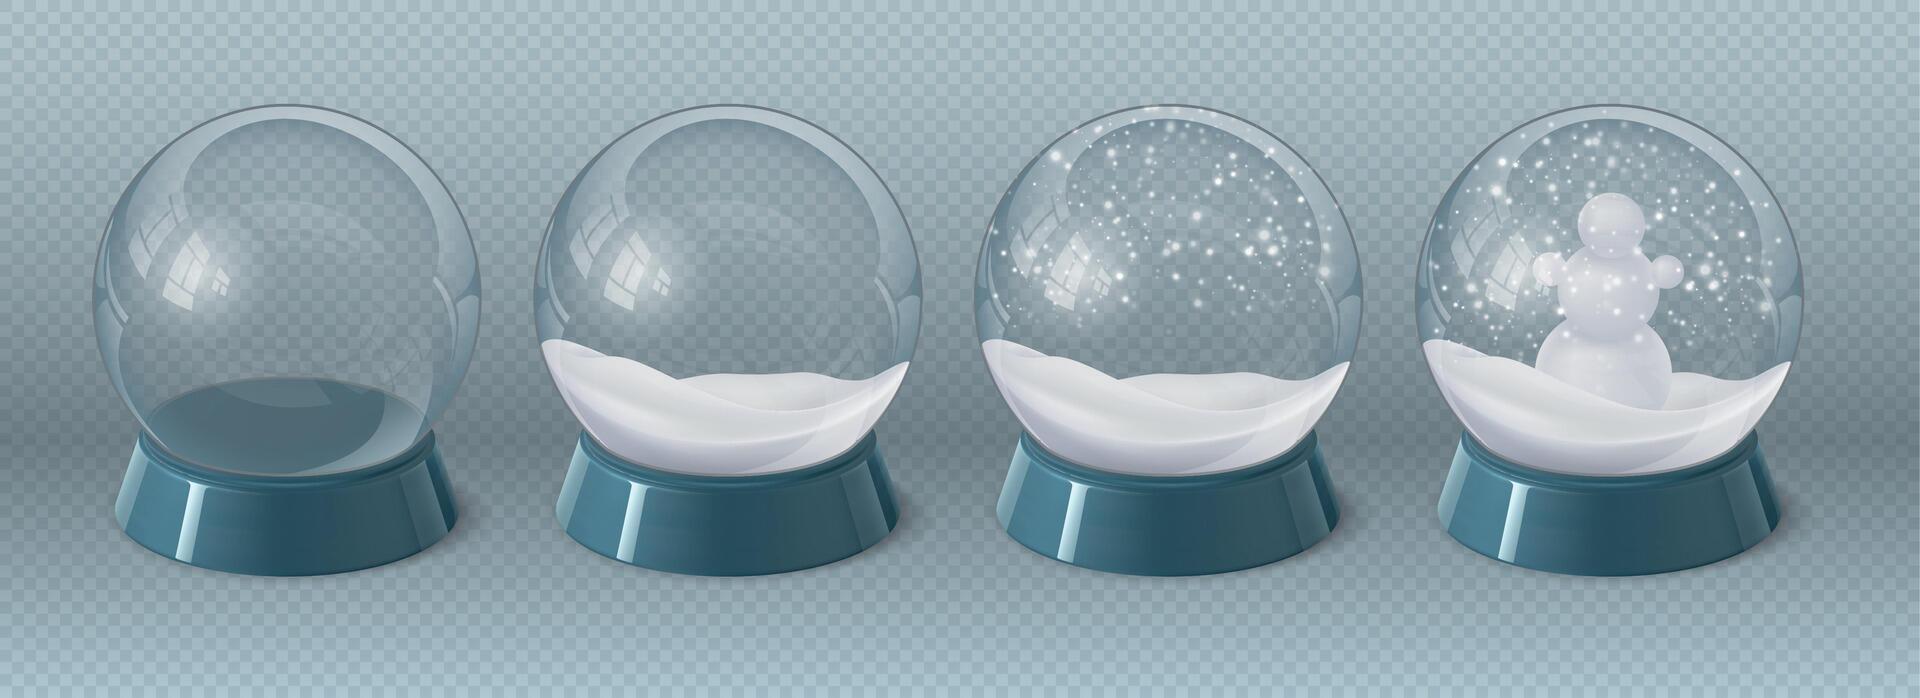 realistico Magia bicchiere globo vuoto, con neve e pupazzo di neve. Natale cristallo snowglobe con inverno arredamento. souvenir con nevicata vettore impostato